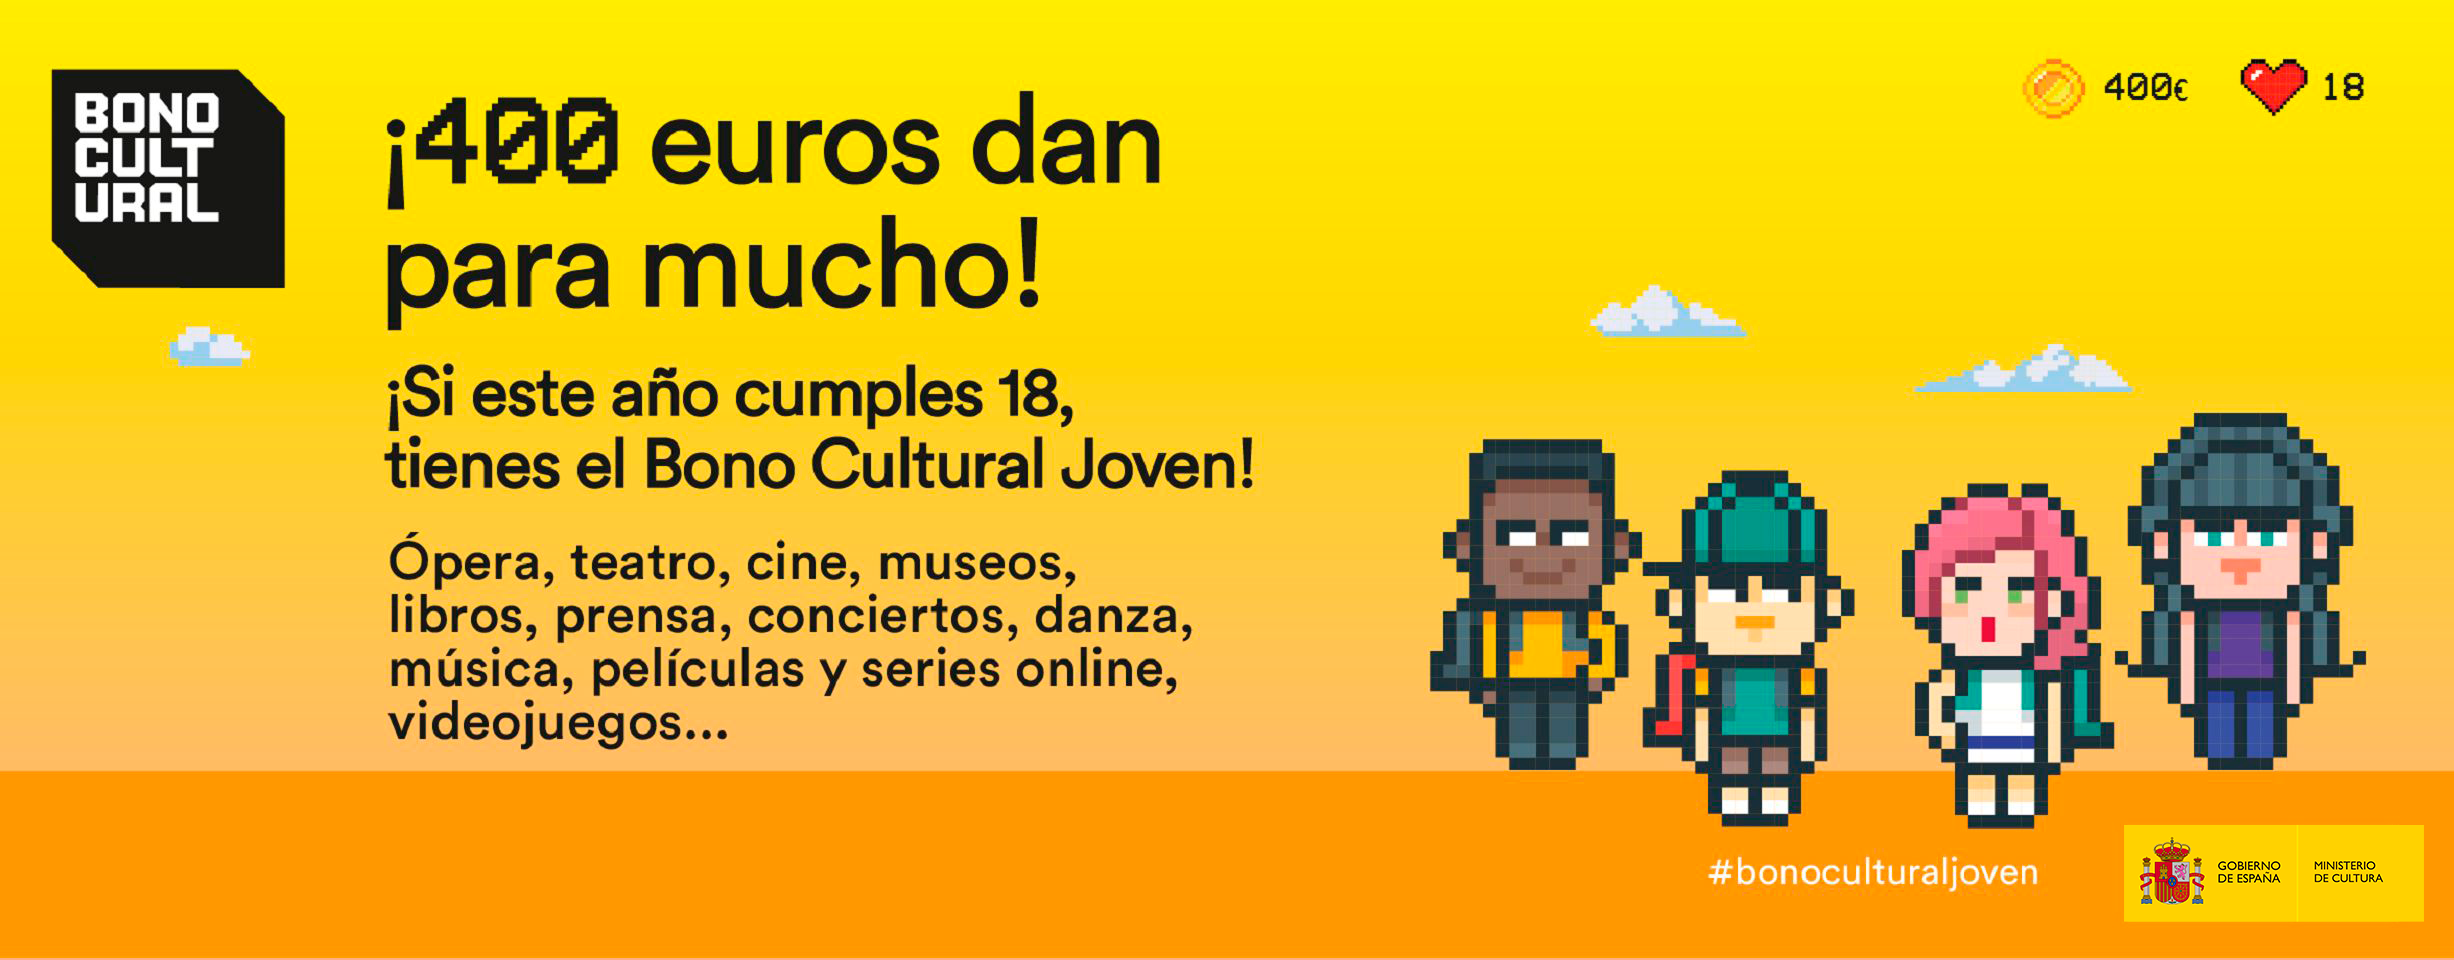 bono_cultural_joven24